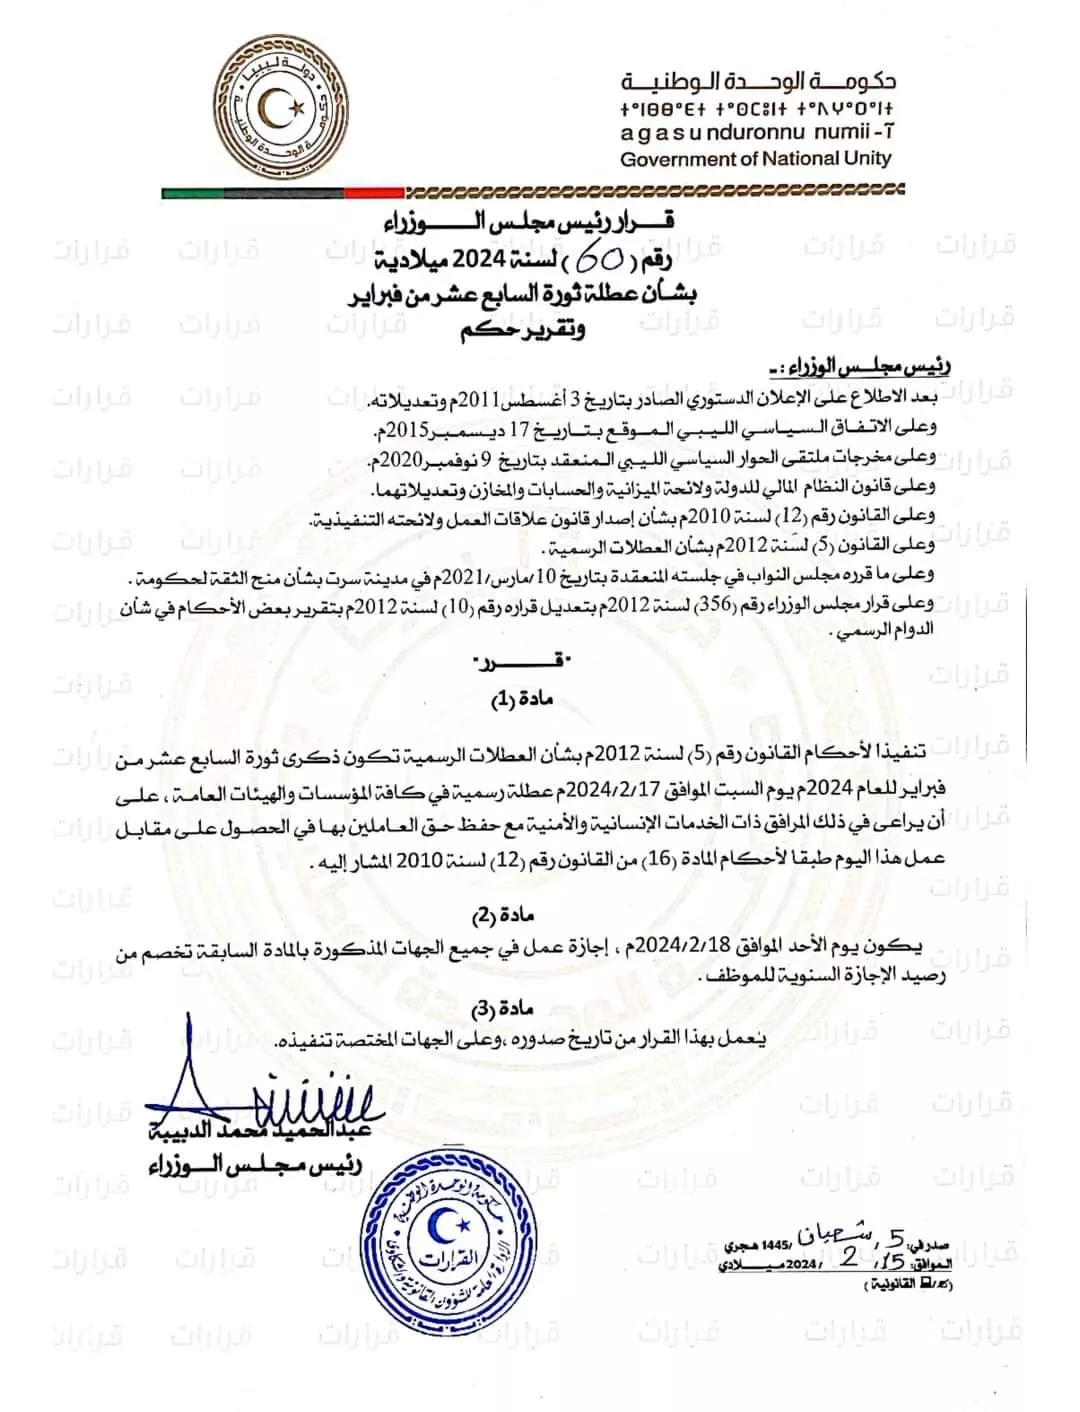 قرار رئيس مجلس الوزراء رقم (60) لسنة 2024م بشأن تحديد يوم عطلة رسمية.  #ليبيا  #حكومة_الوحدة_الوطنية